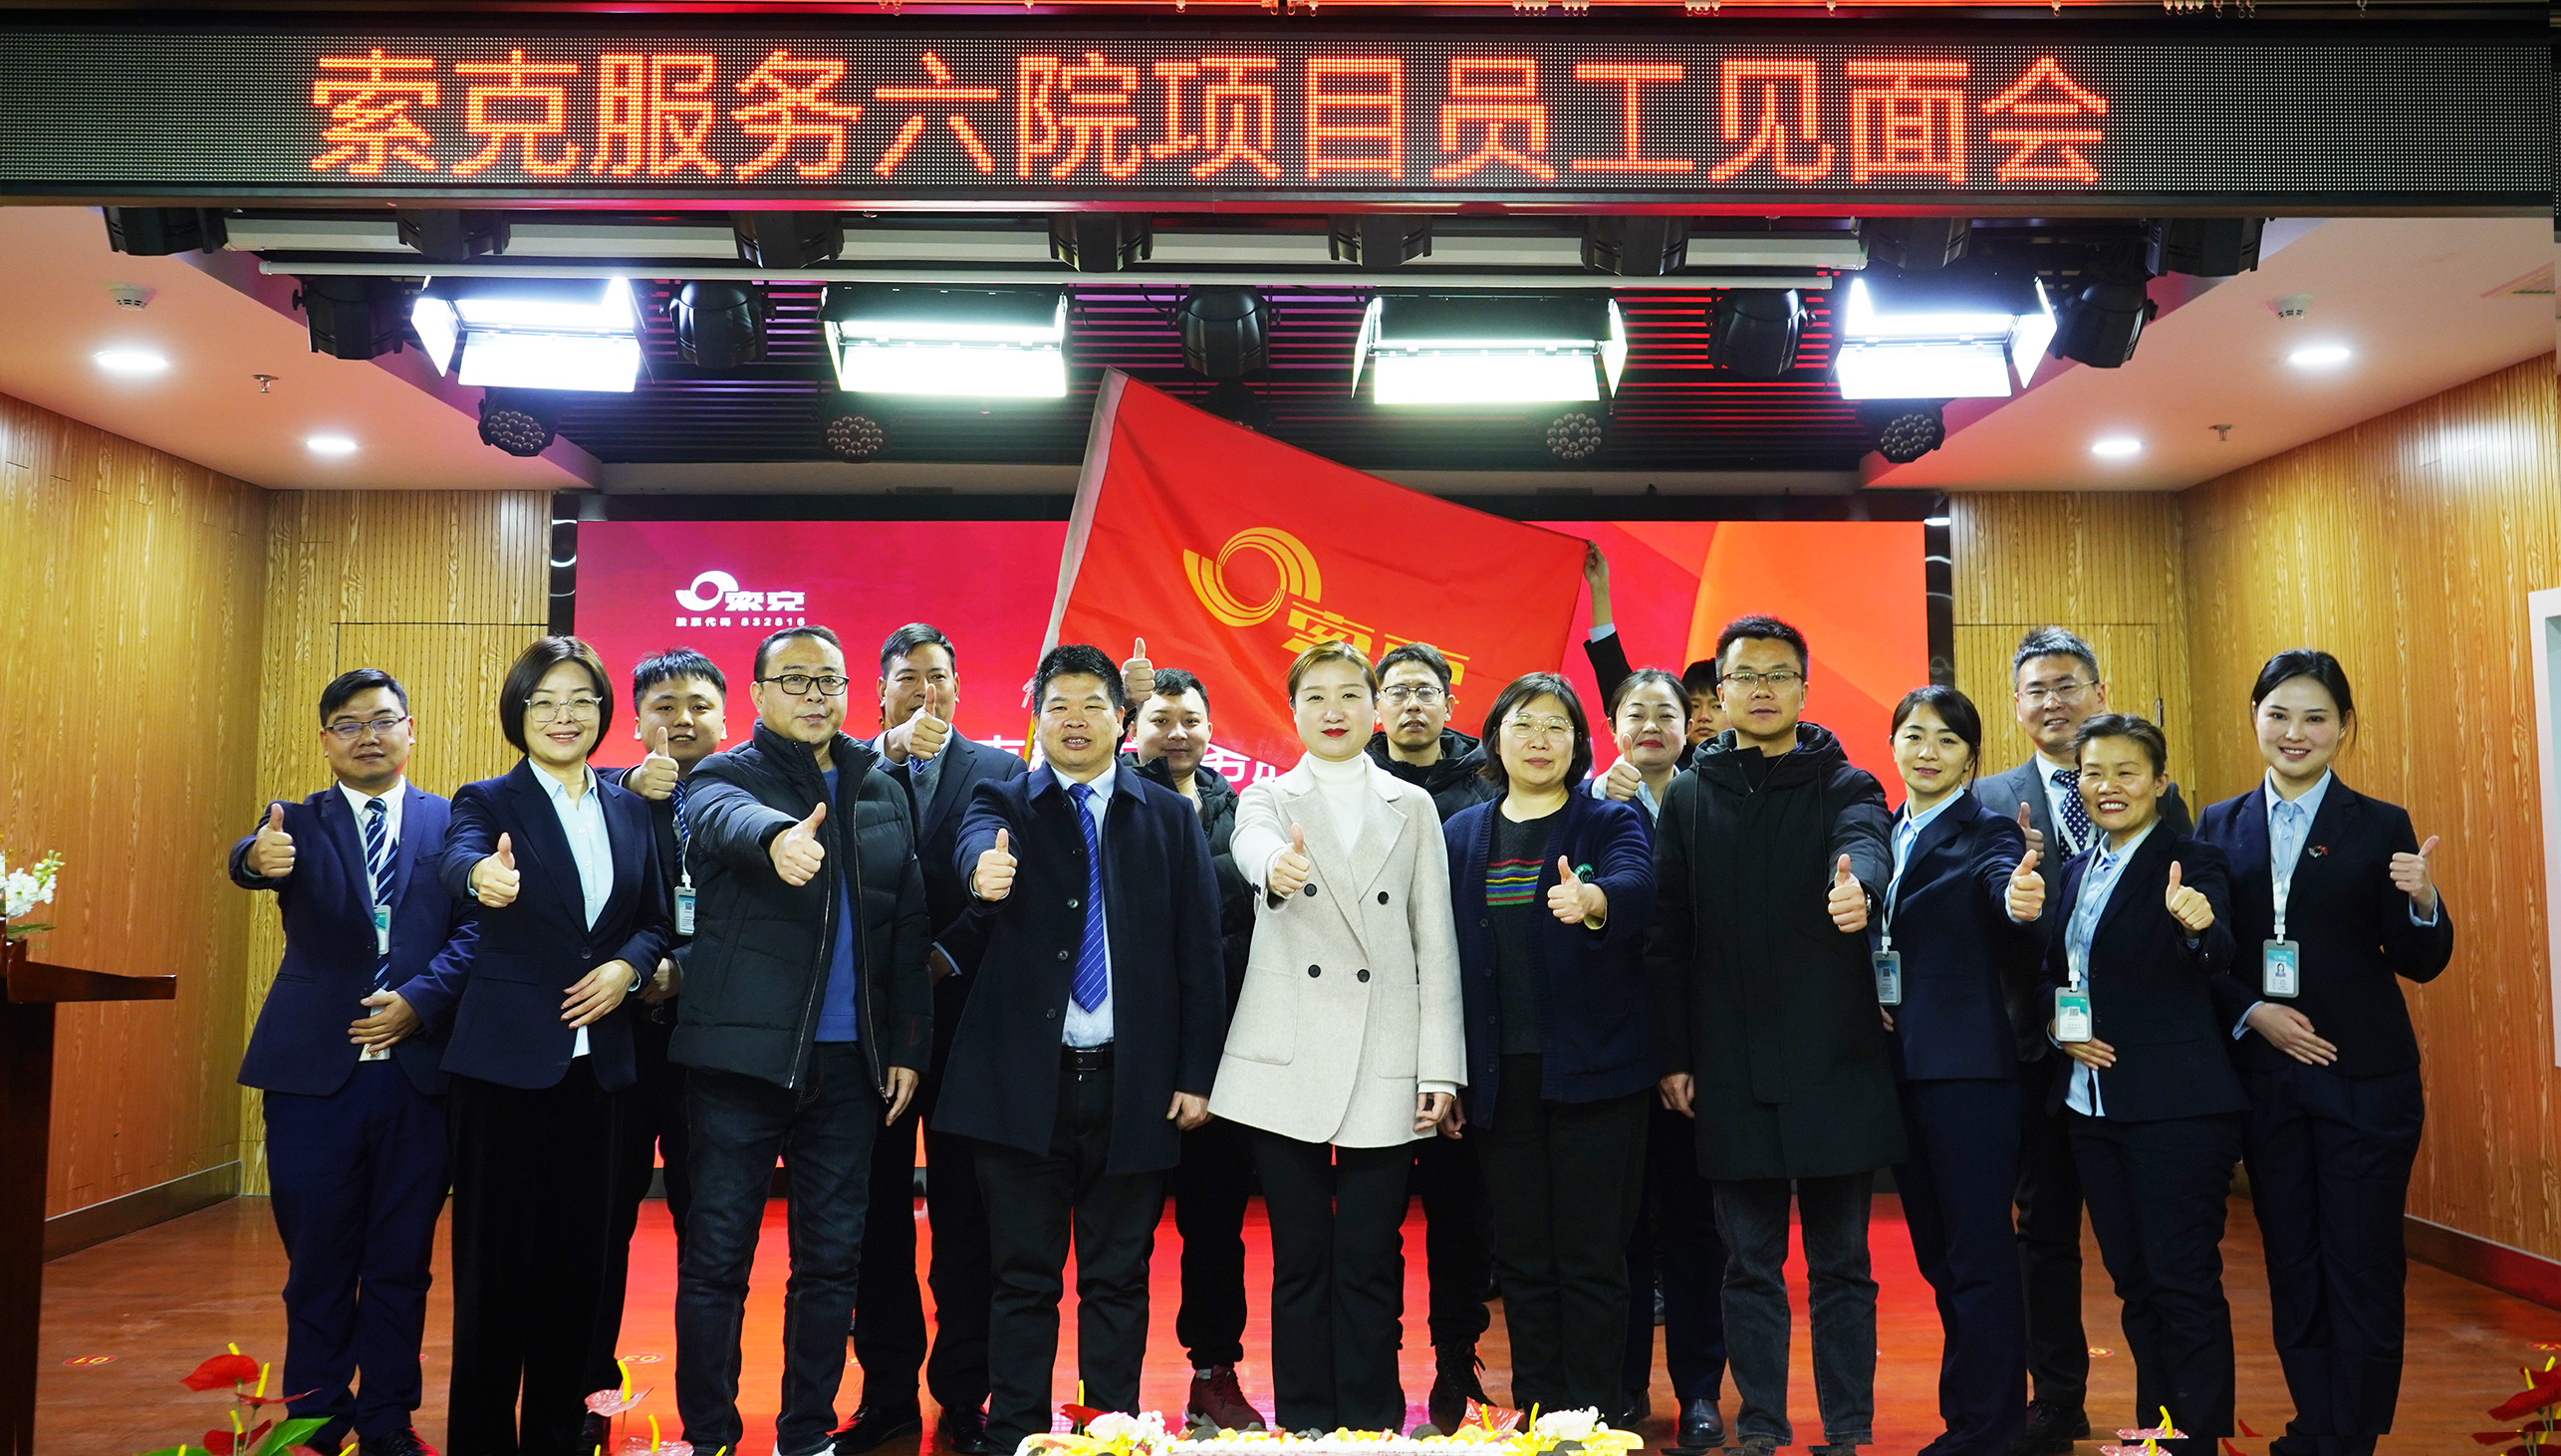 龙行龘龘，前程朤朤| 金沙js服务项目团队进驻郑州市第六人民医院